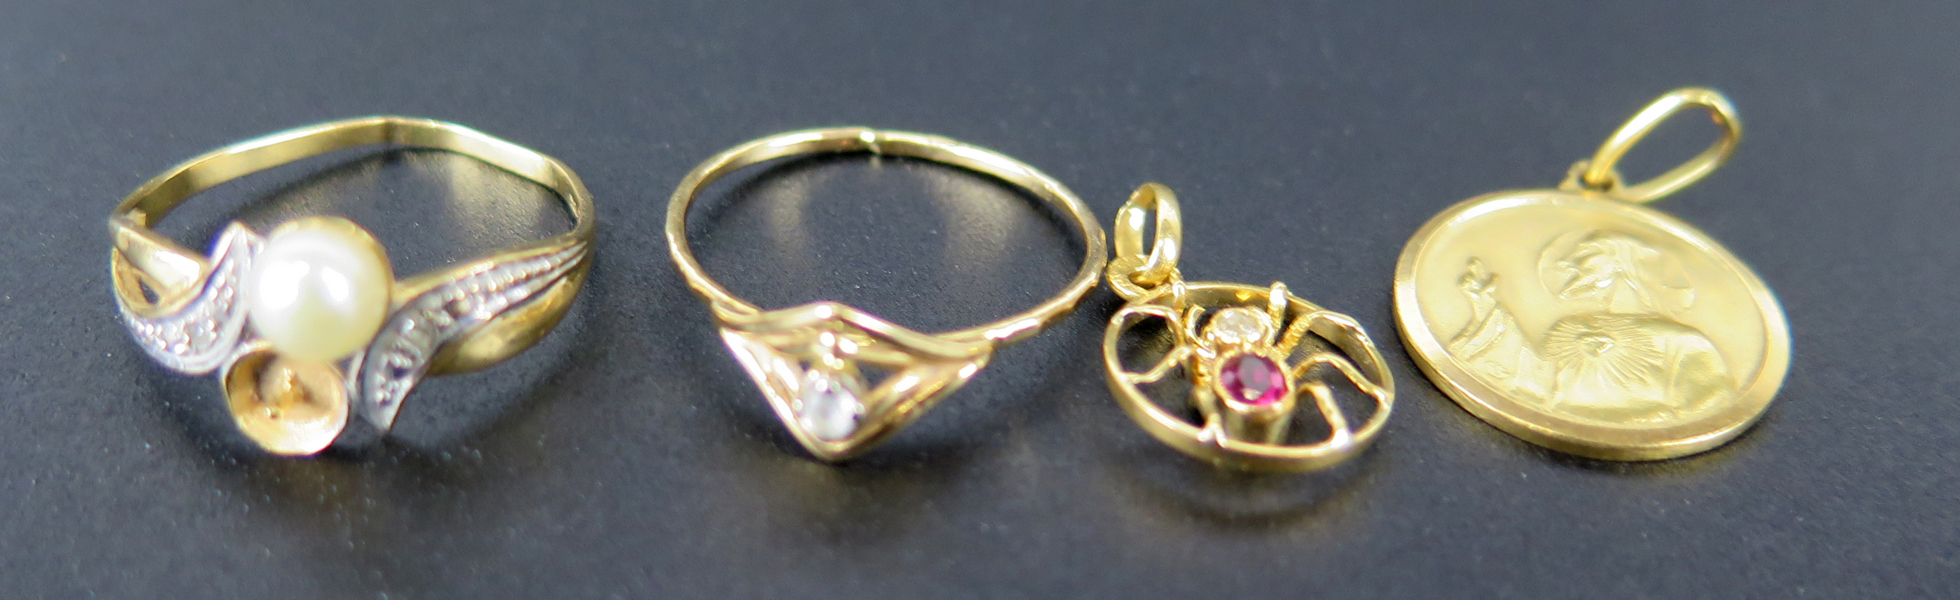 Parti 18 karat rödguld, 2 ringar samt 2 hängen, delvis med stenar eller pärla, total vikt 5,3 gram_36572a_lg.jpeg